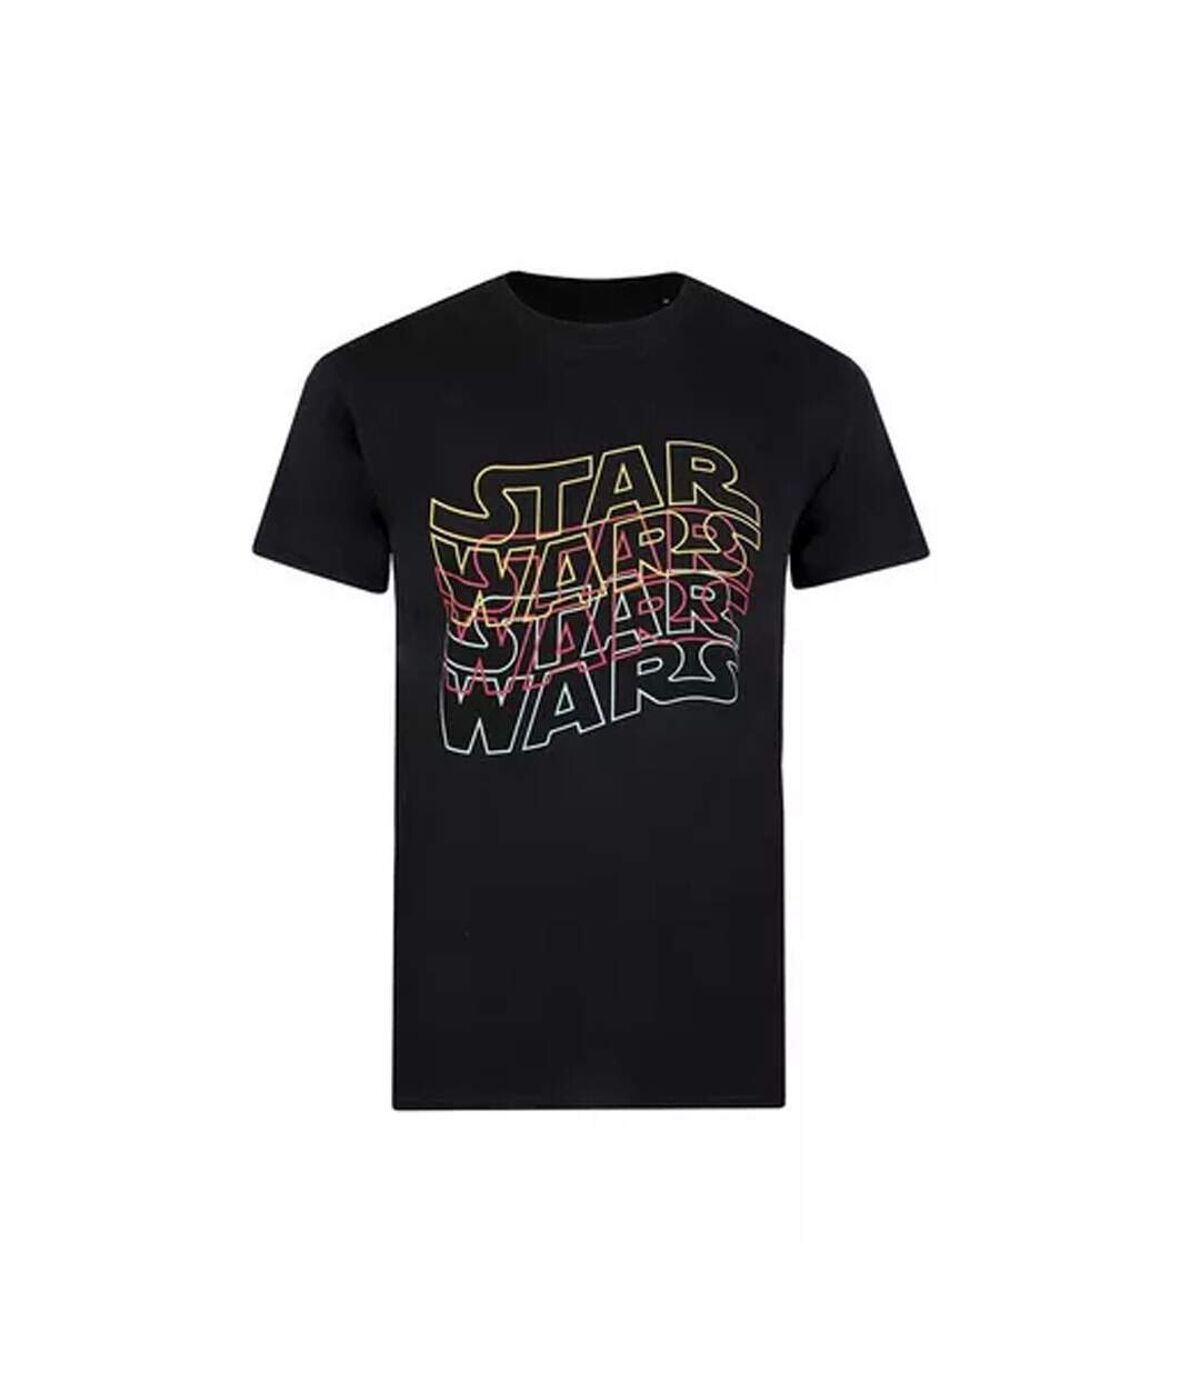 Star Wars - T-shirt - Homme (Noir) - UTTV1362